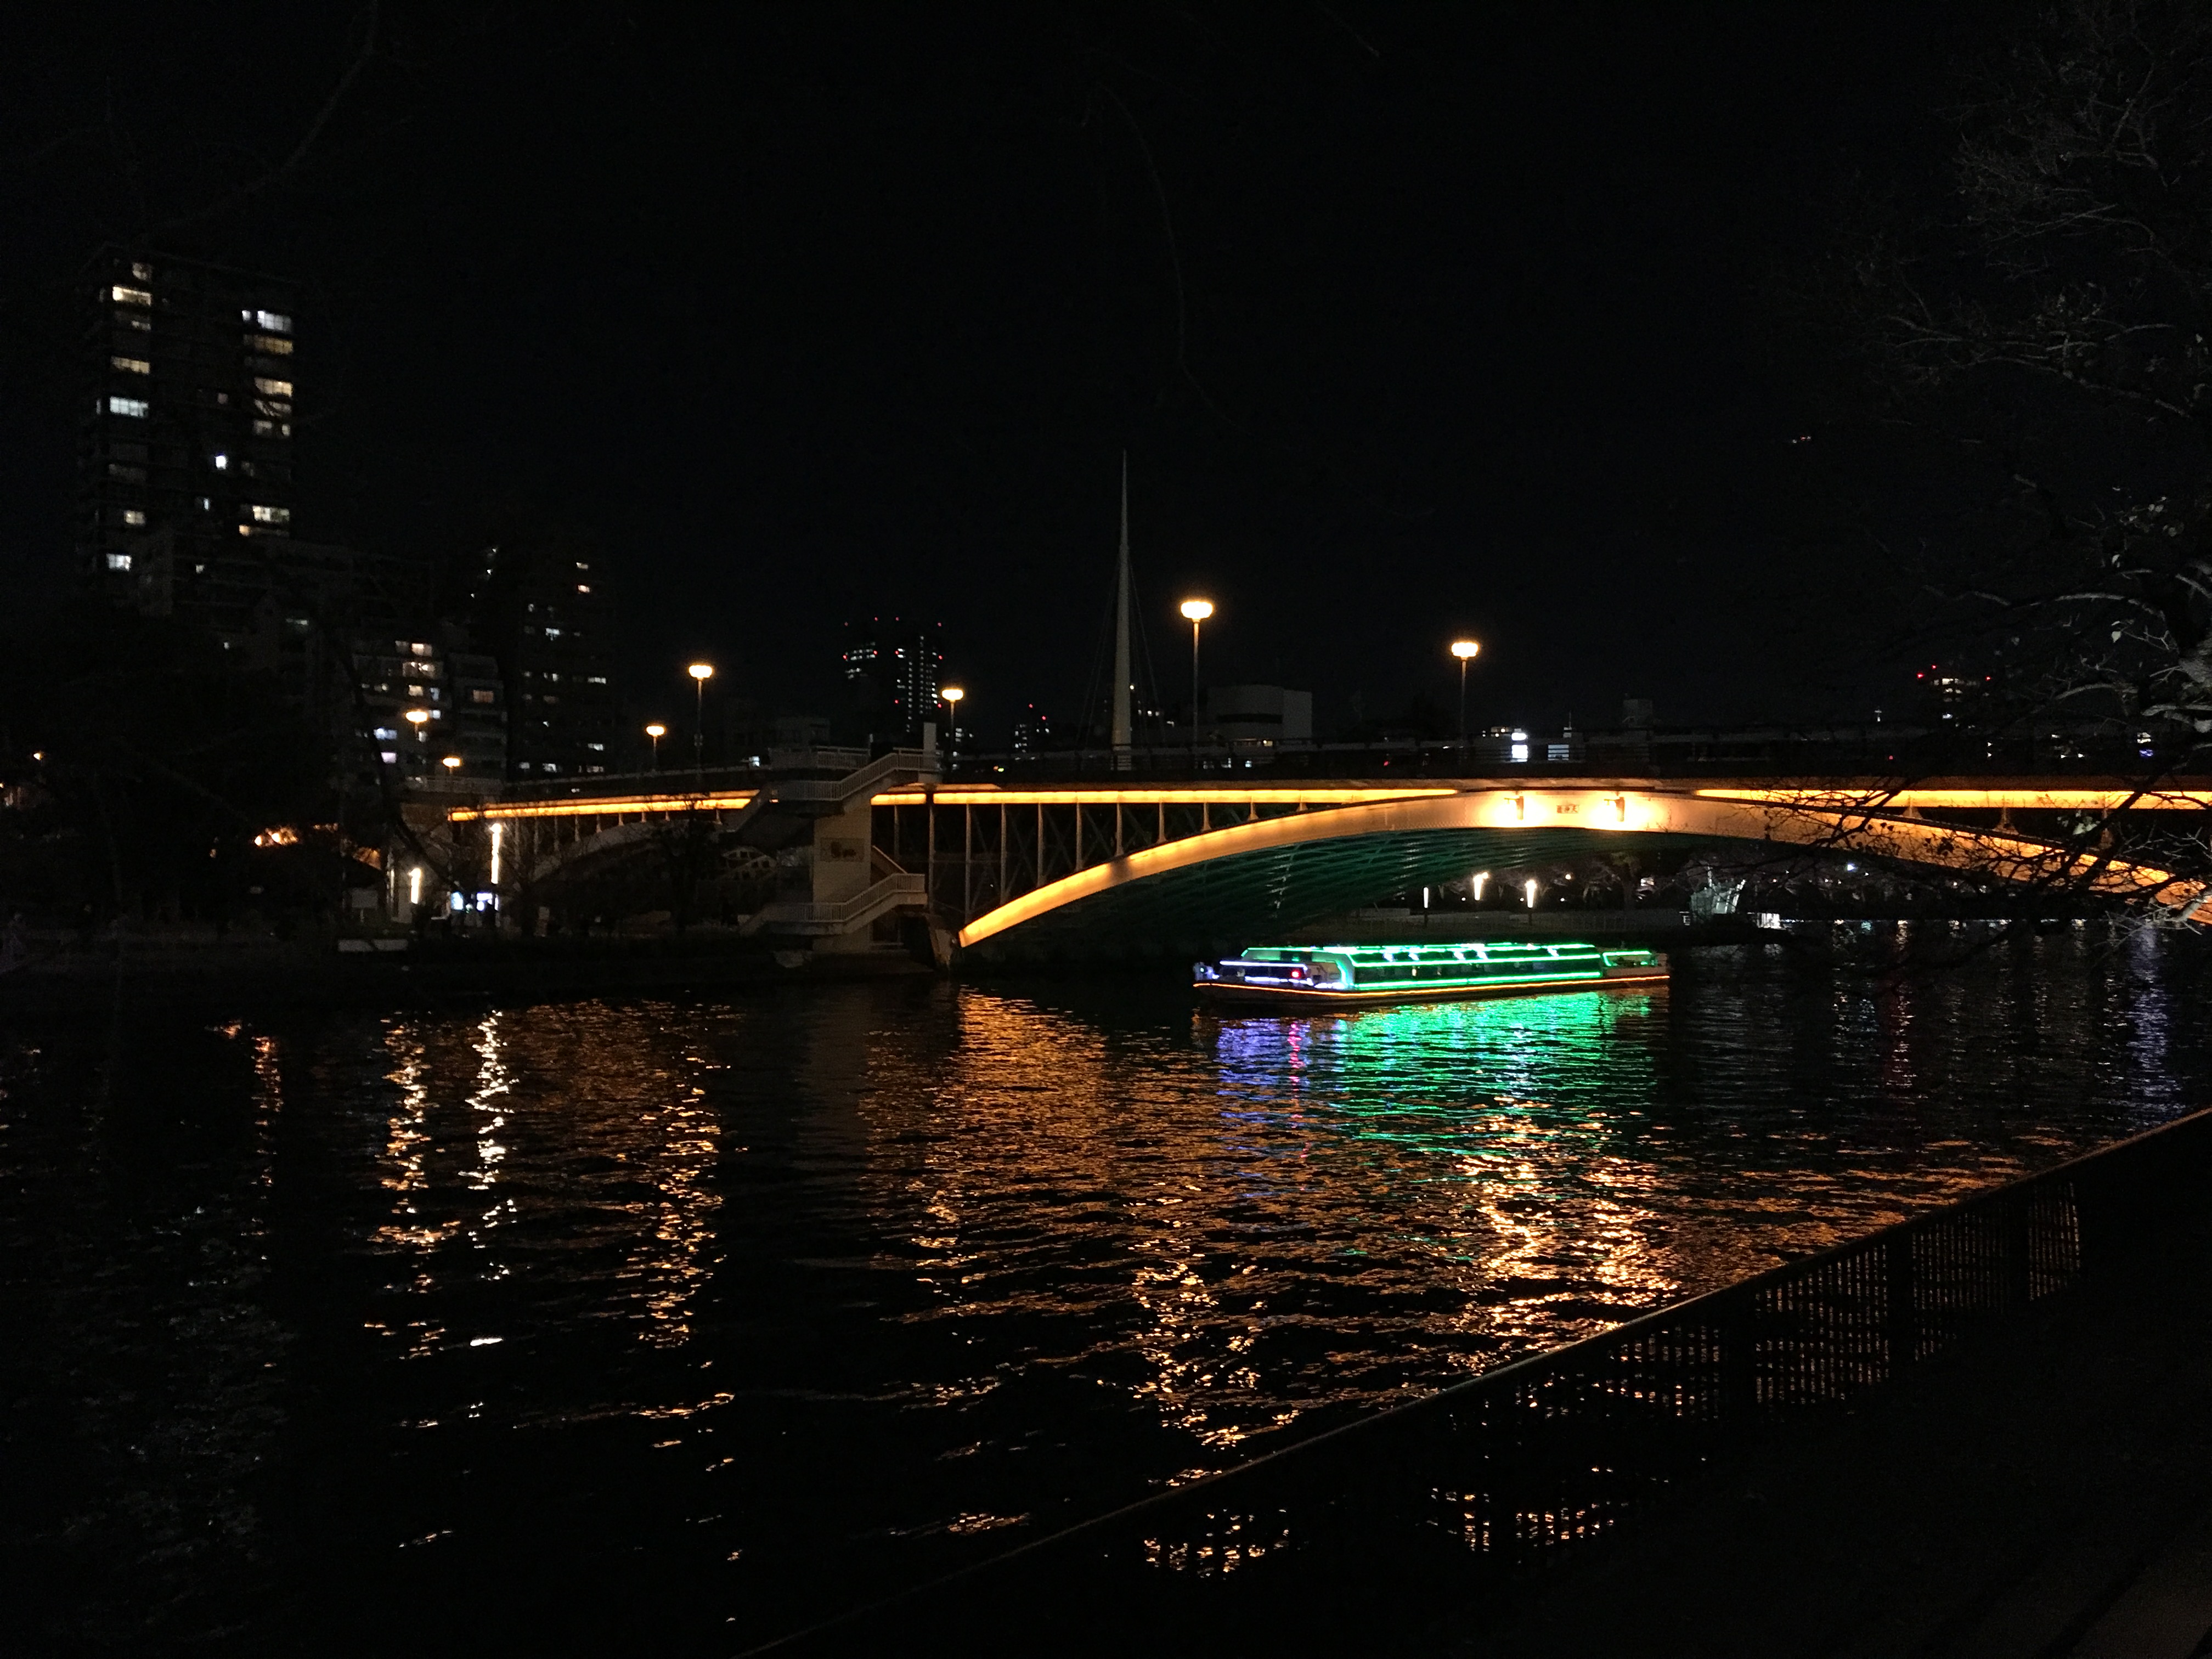 Naniwabashi Bridge at night as a colorful illuminated aqua-liner sails under it